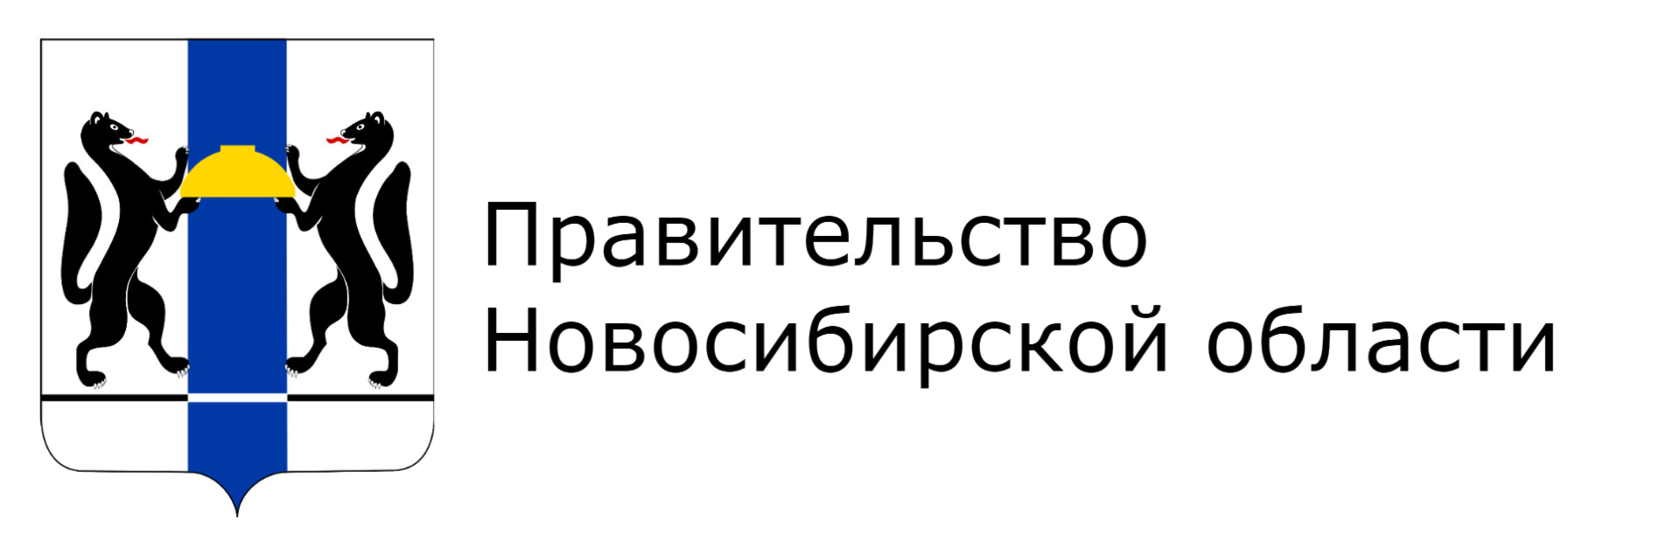 Сайт никпро новосибирской области. Правительство Новосибирской области герб. Логотип Министерства Новосибирской области. Правительство Новосибирской области лого. Министерство образования Новосибирской области логотип.